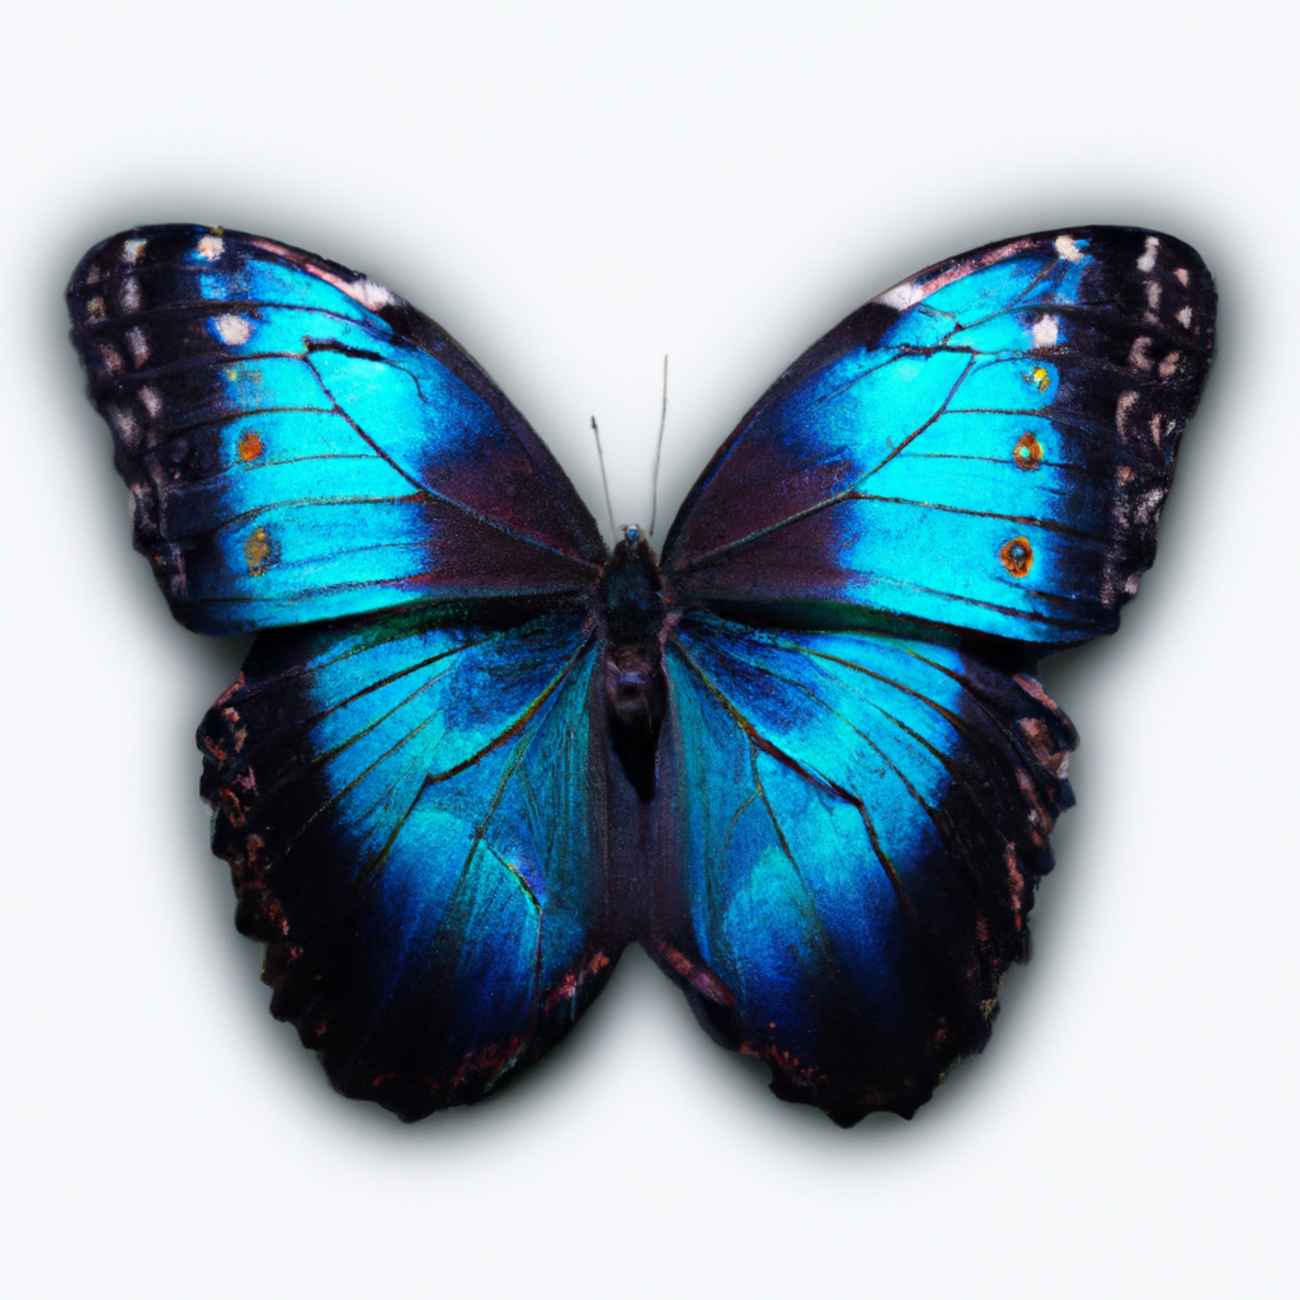 Le papillon Morpho Bleu : une créature fascinante aux ailes spectaculaires en Amérique Latine !